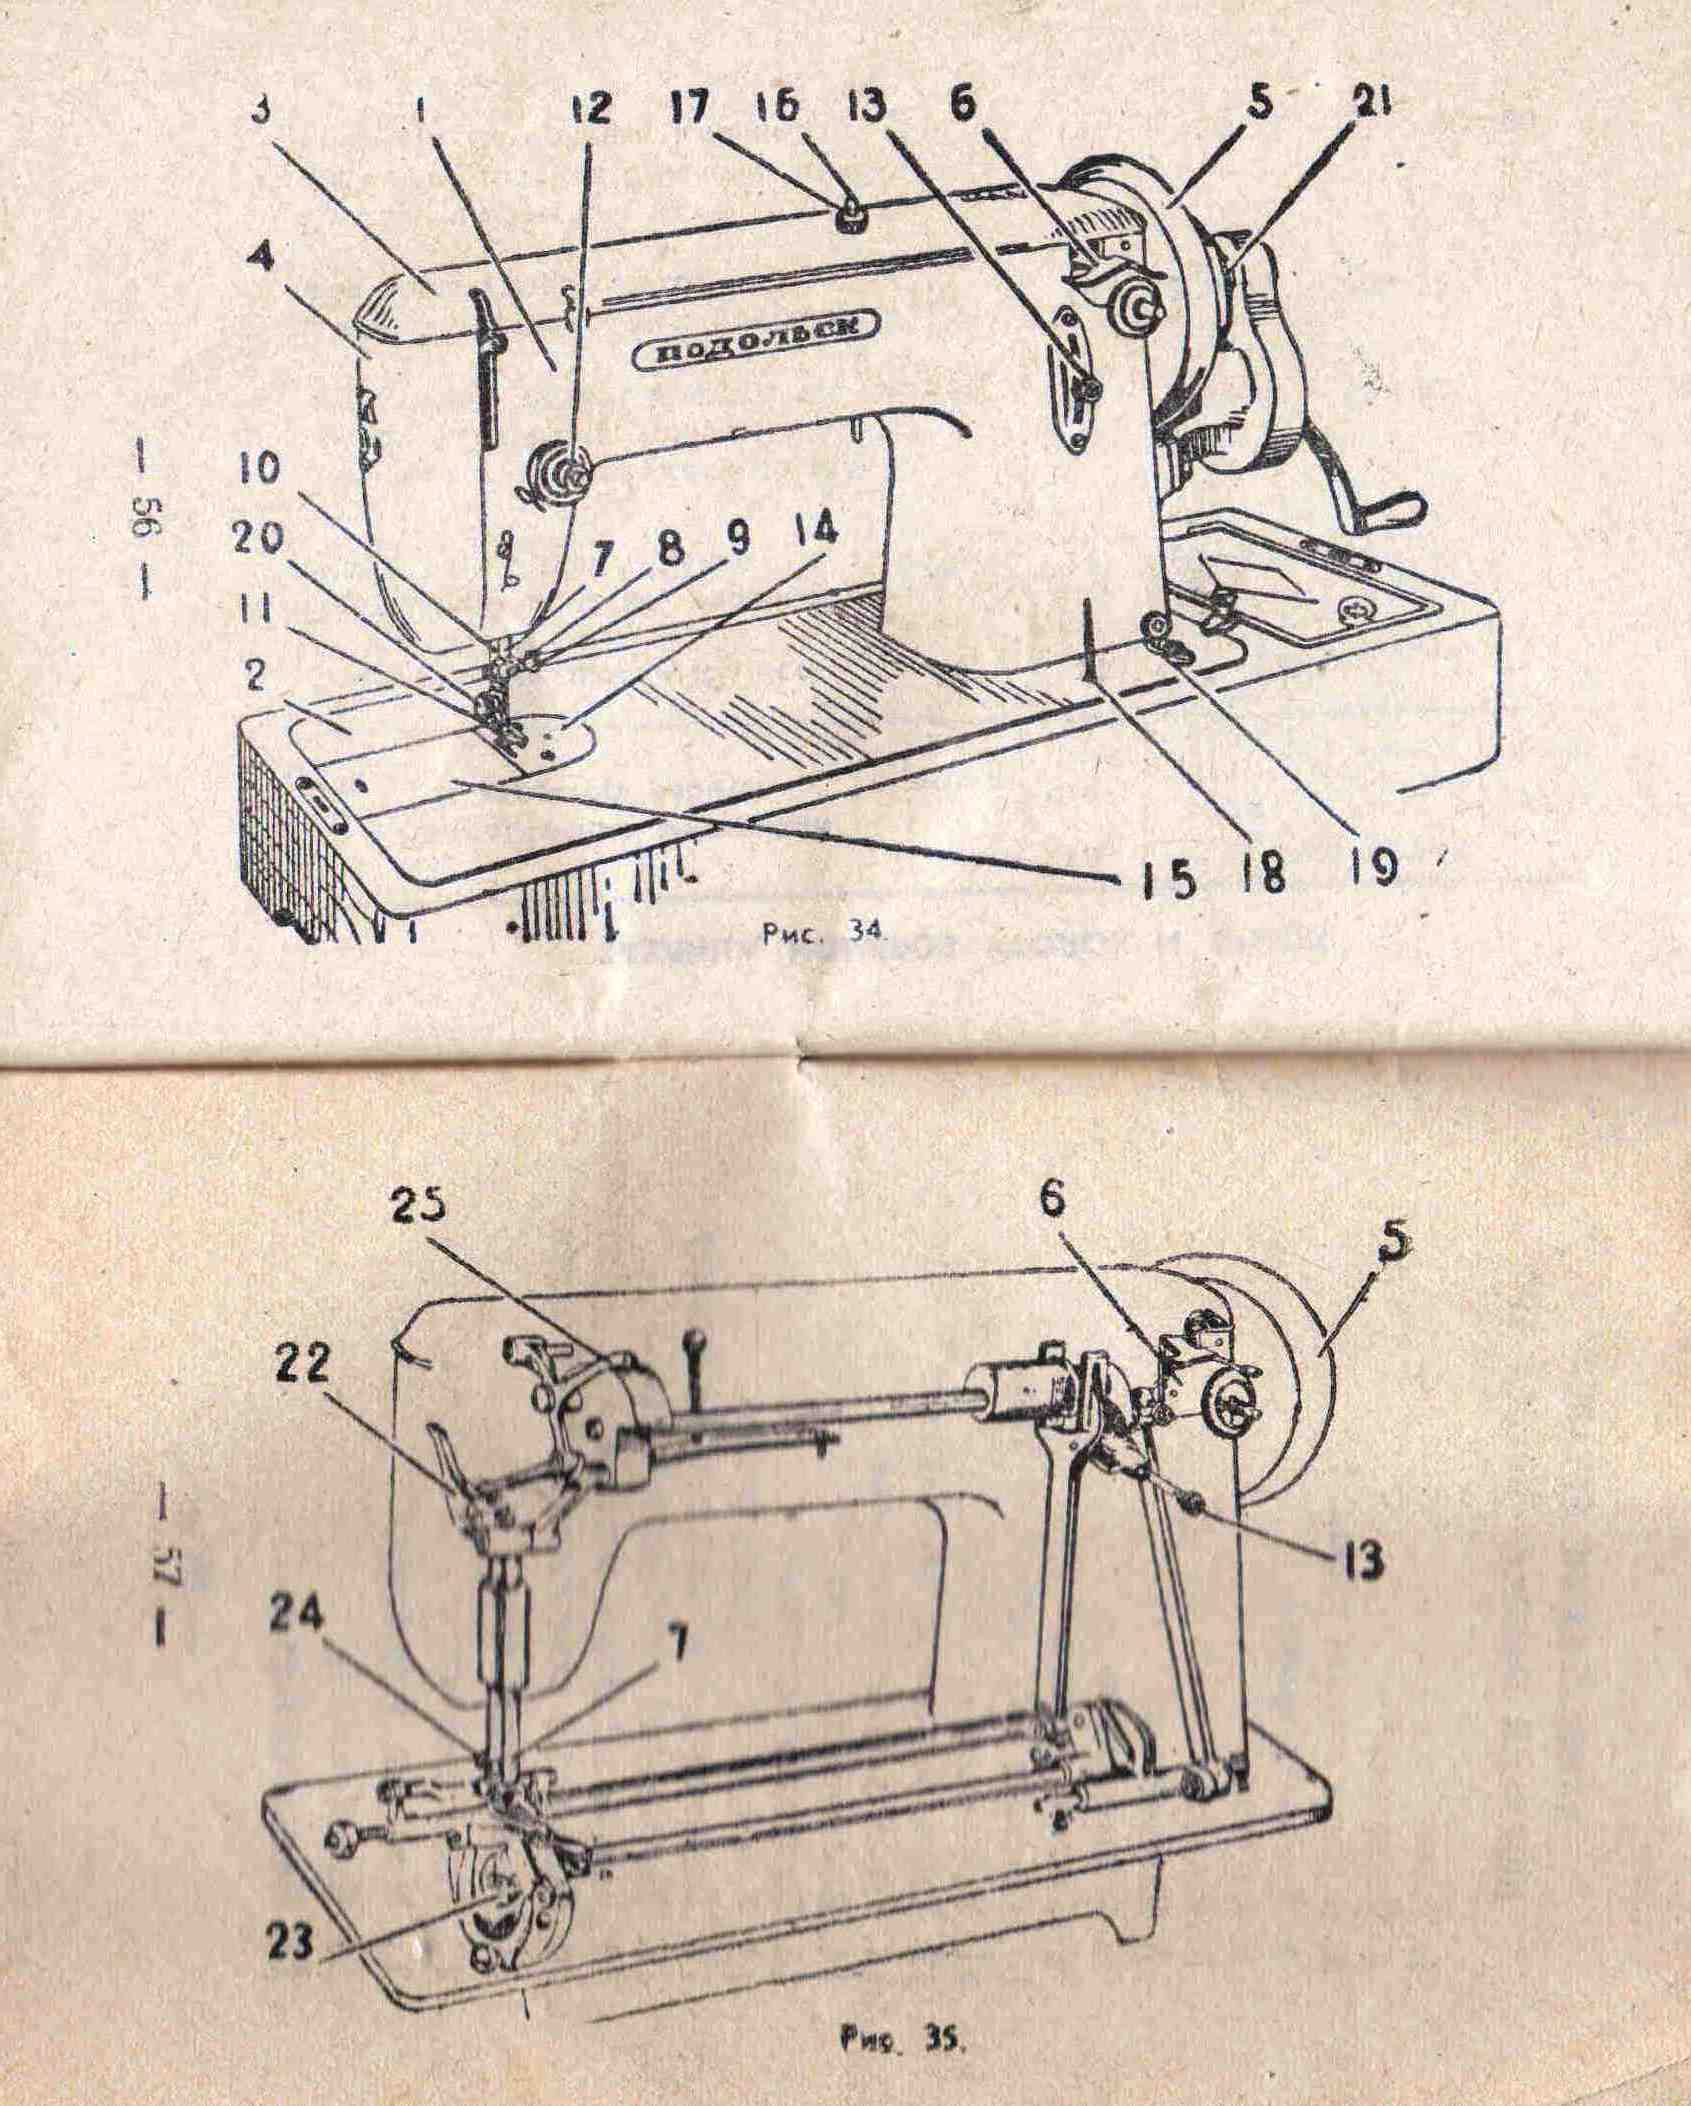 Ремонт ручной швейной машинки